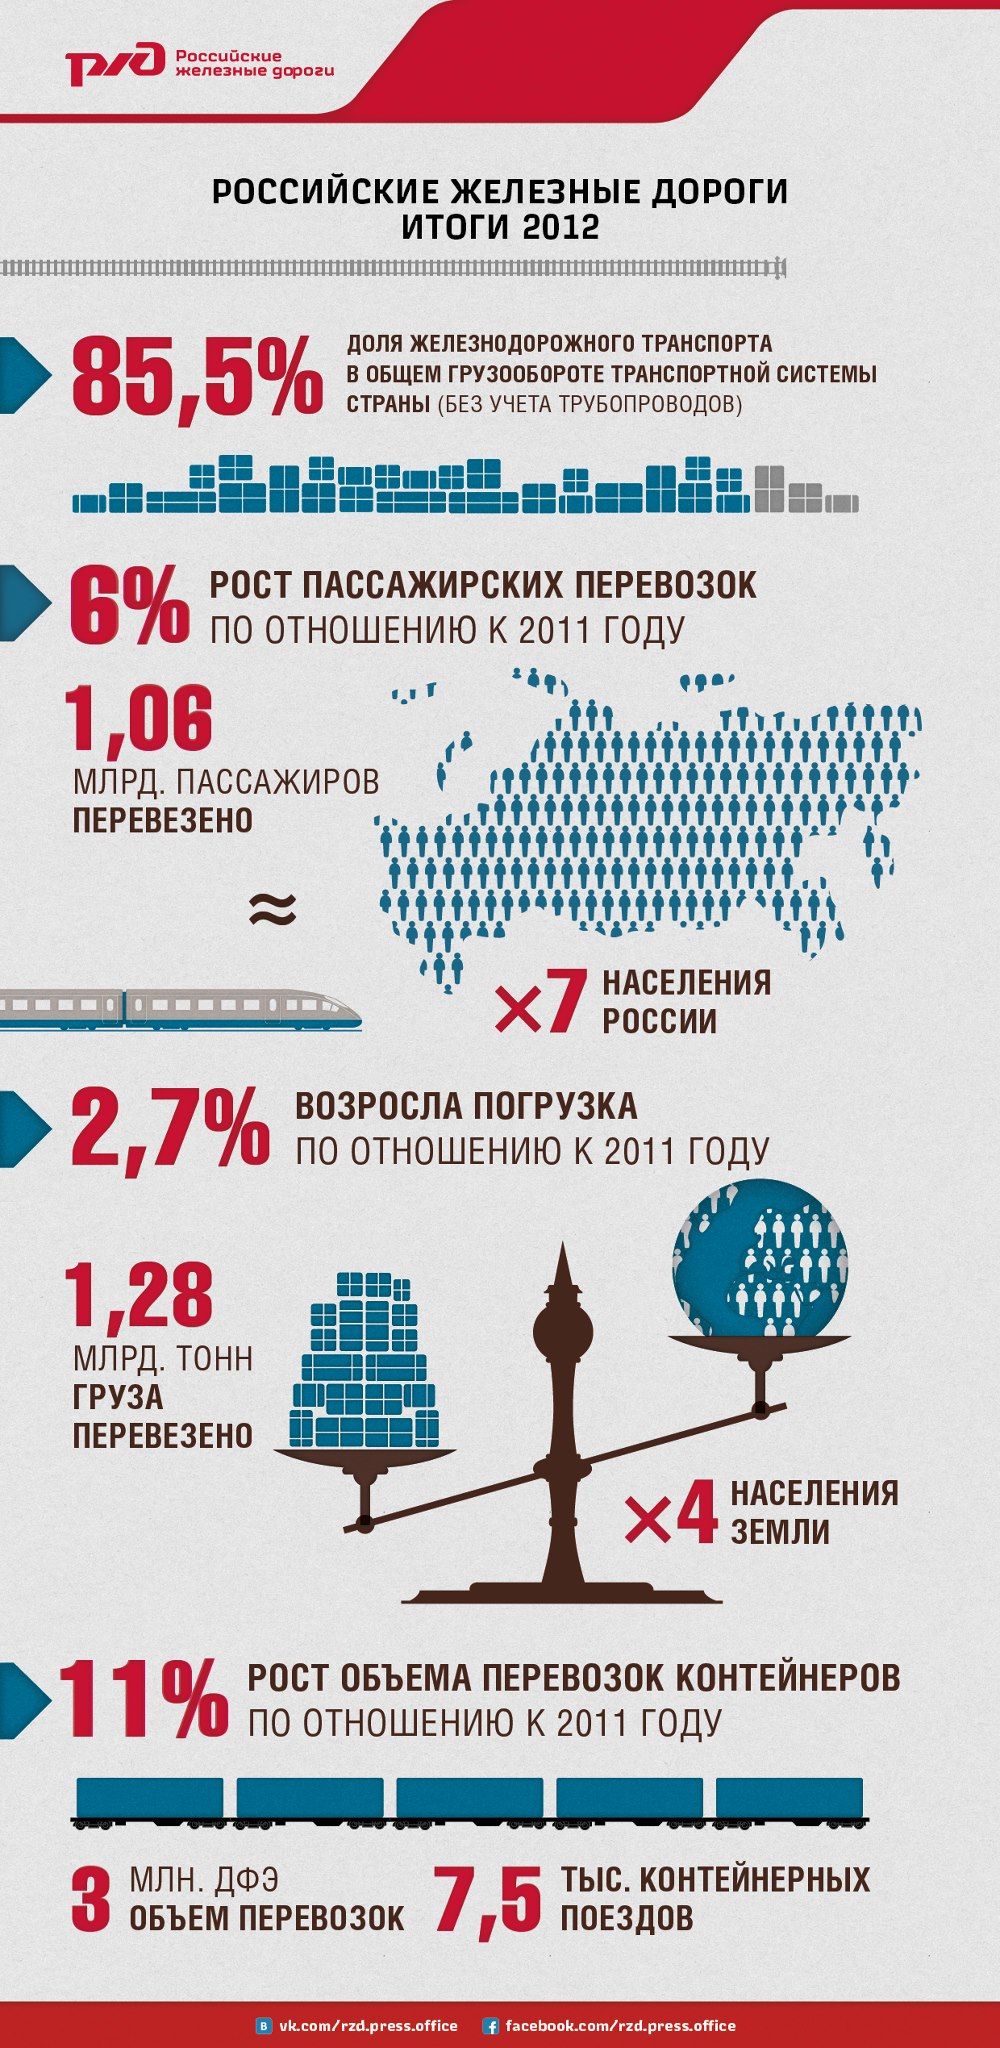 РЖД. Итоги 2012 года